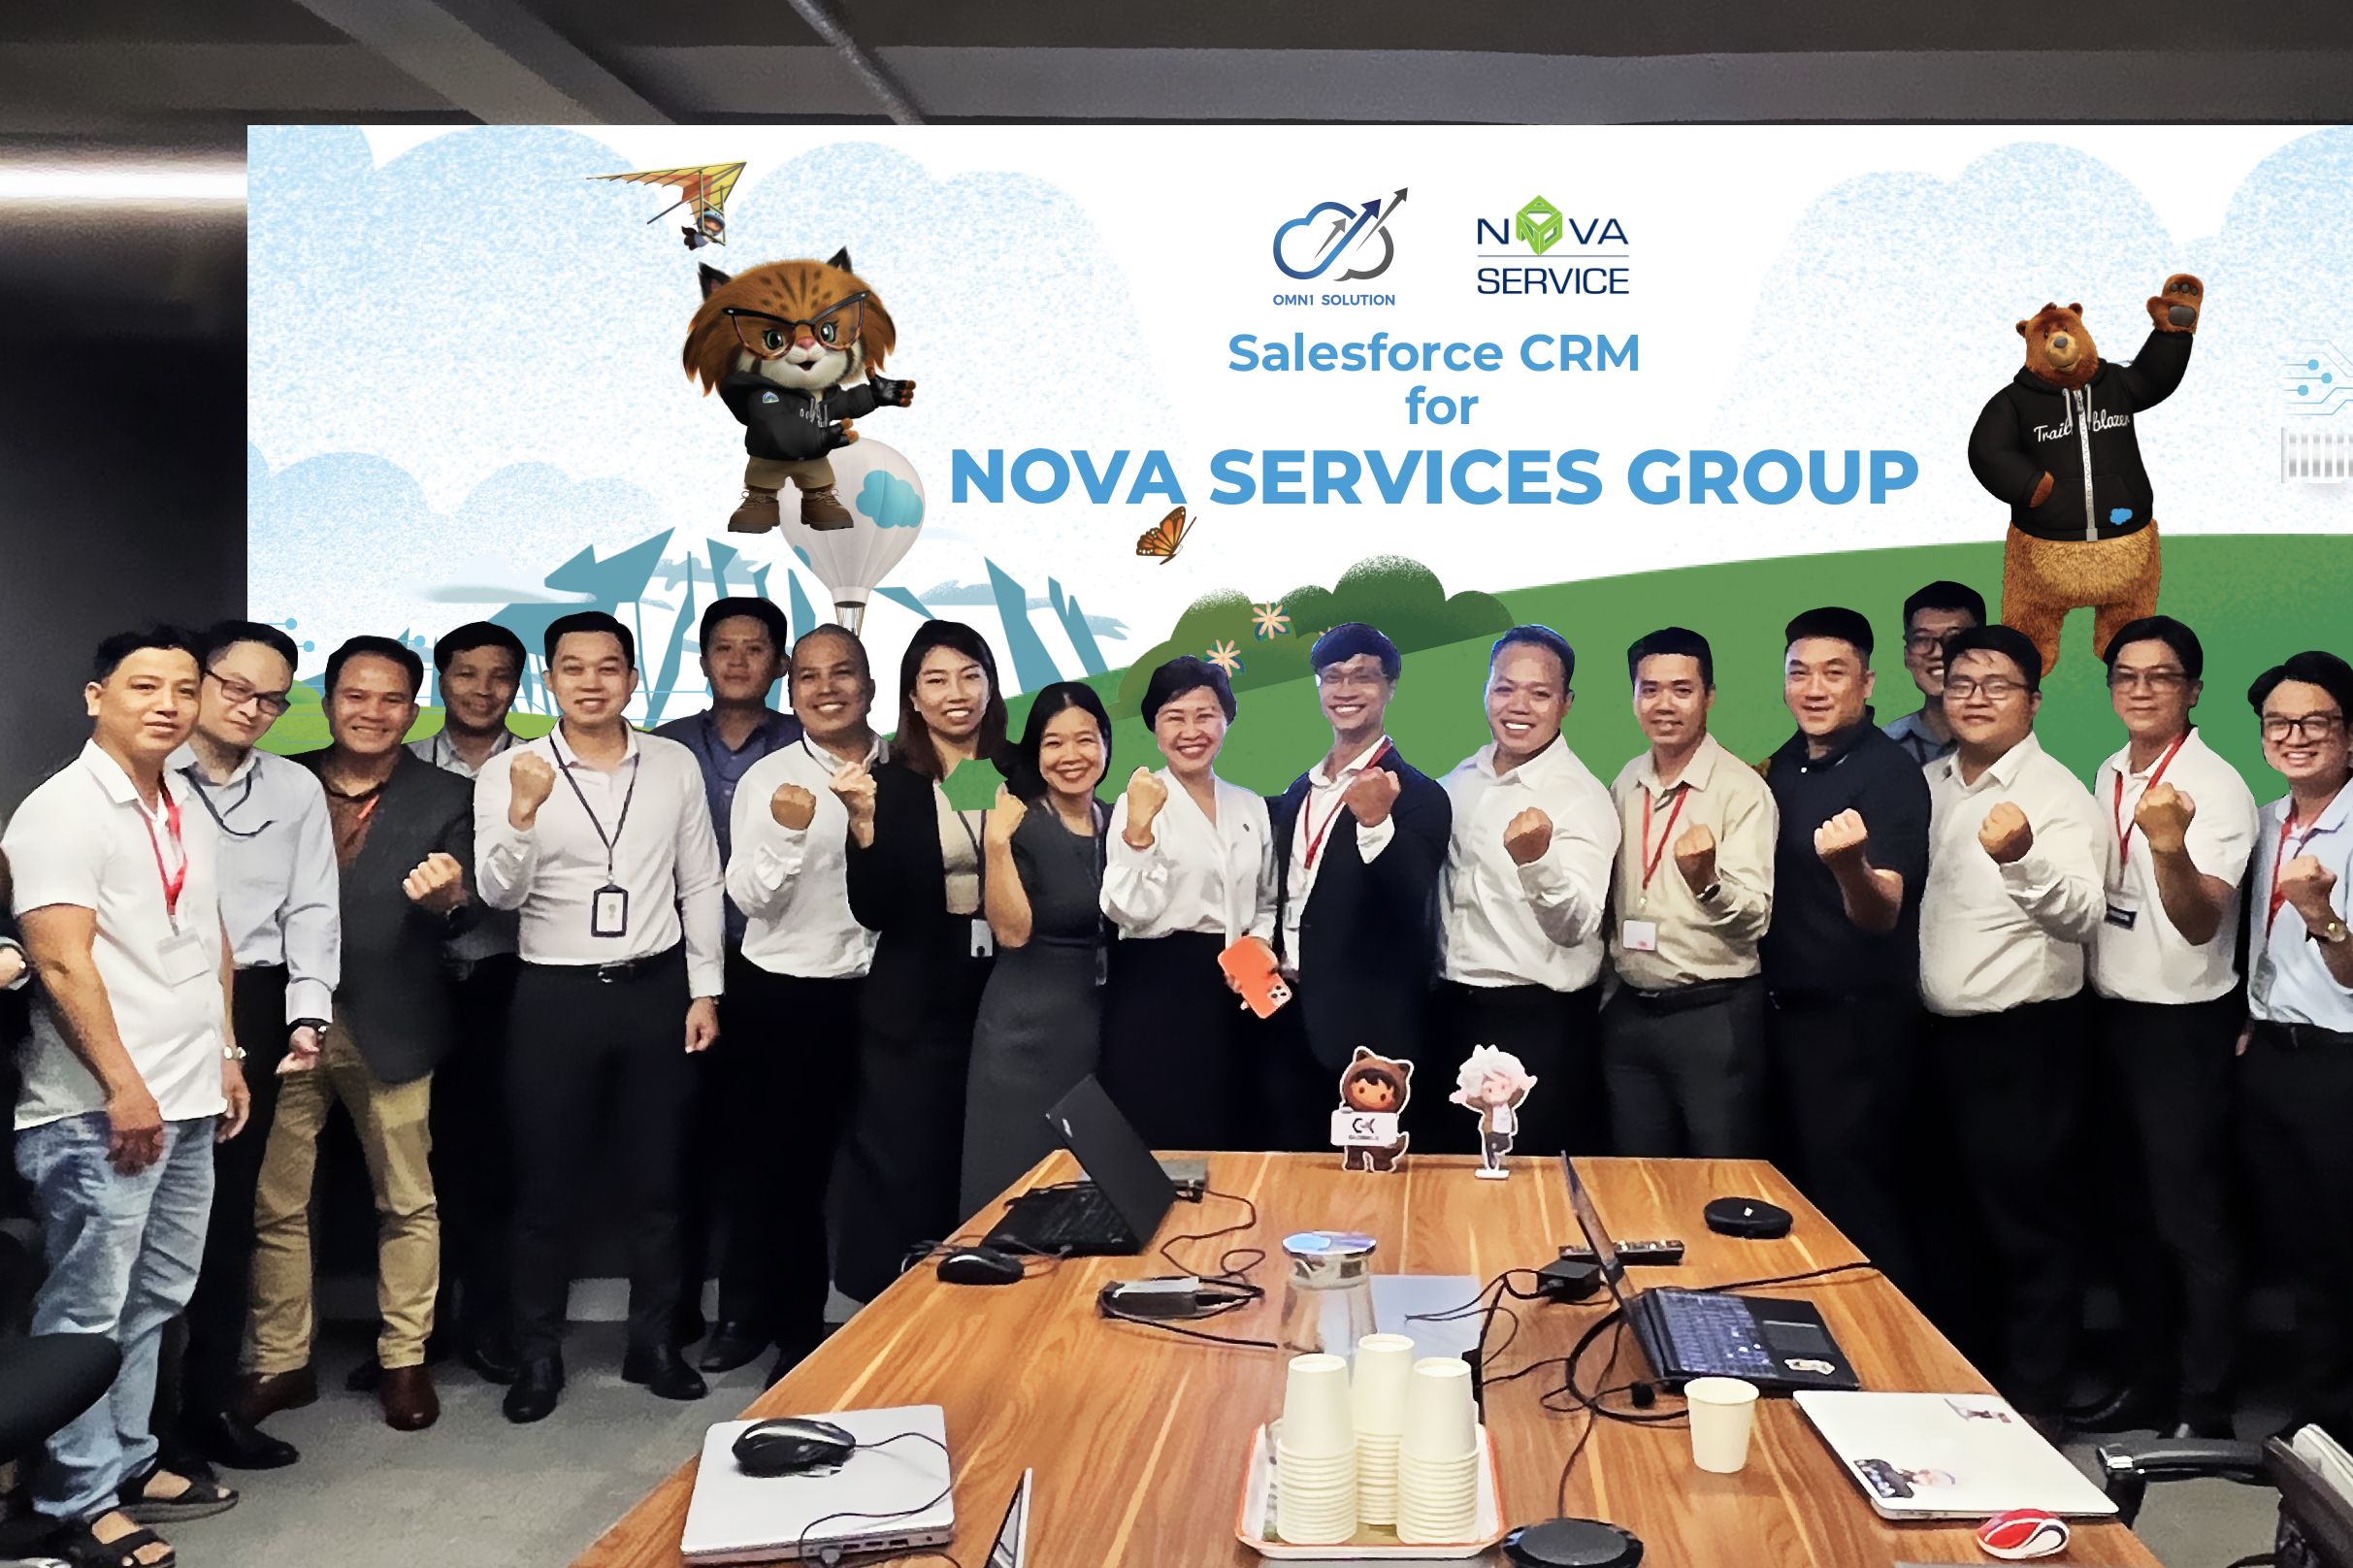 Salesforce CRM giúp Nova Services Group chiếm lĩnh thị trường du lịch và giải trí